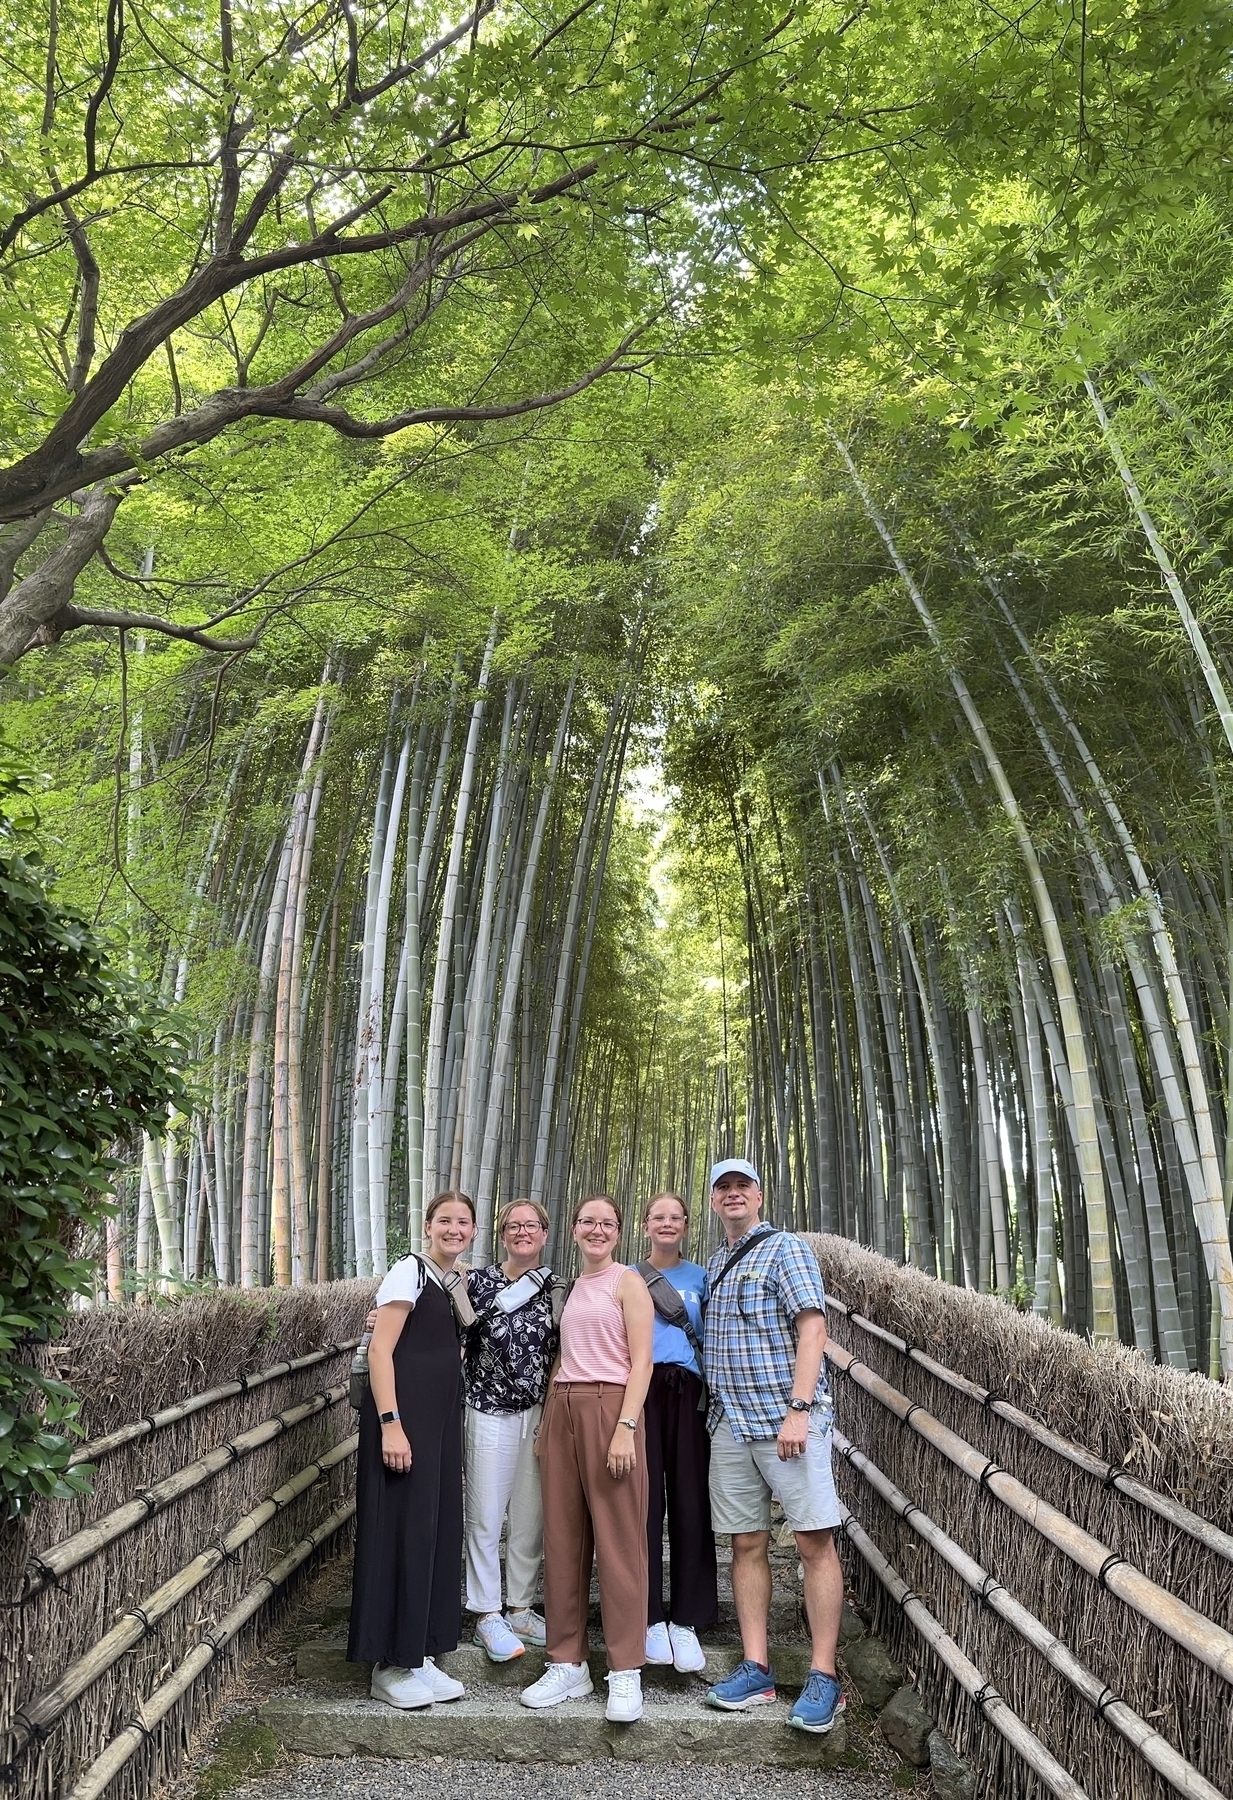 Bamboo forest at Nembutsu-ji Temple